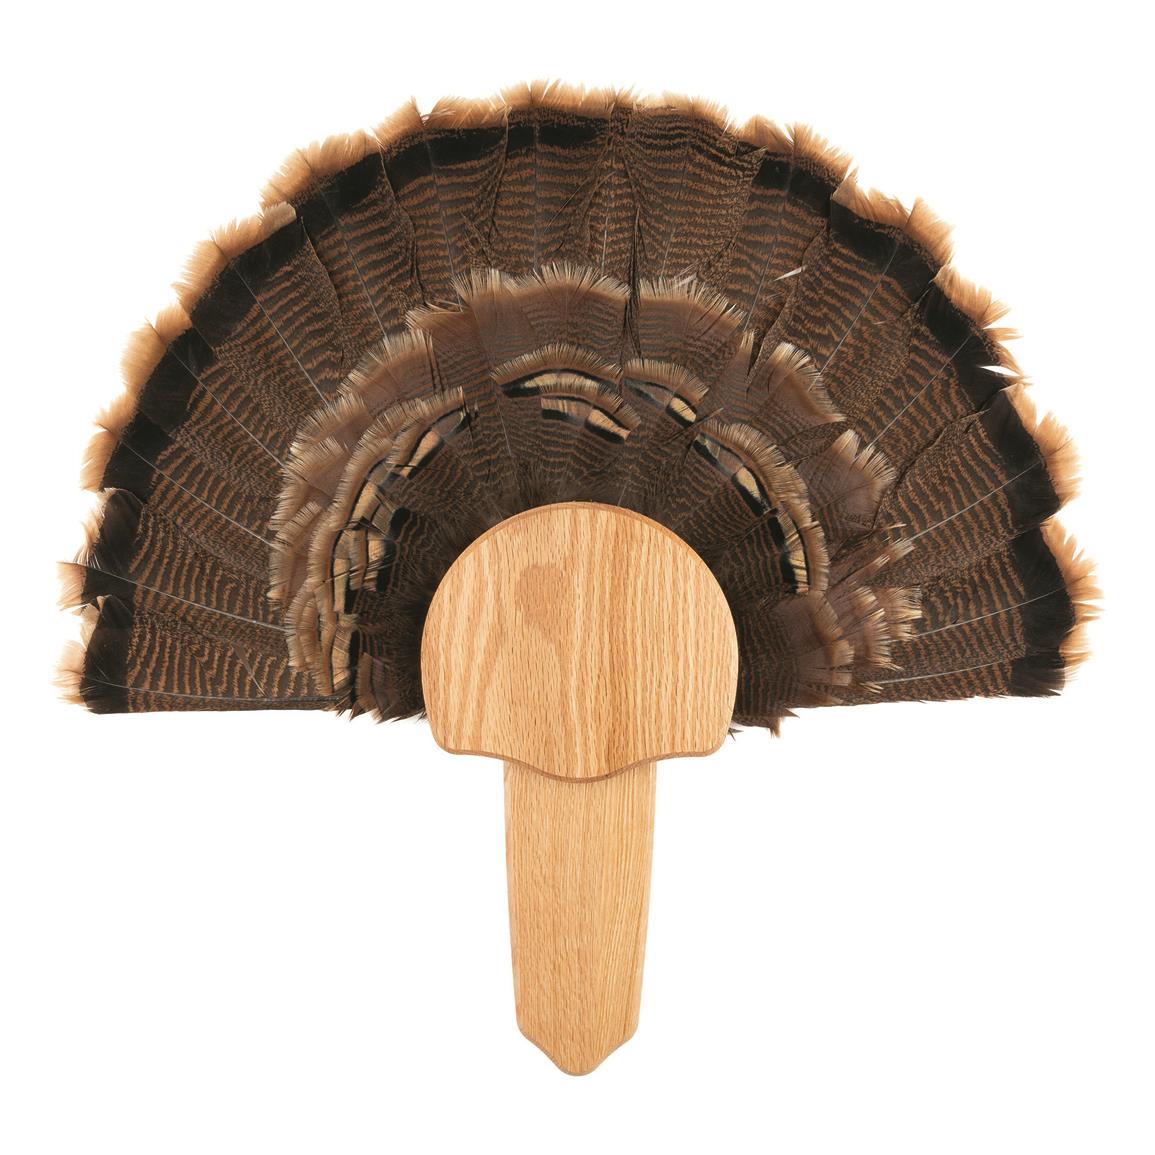 Walnut Hollow Turkey Fan Mount Kit, Oak